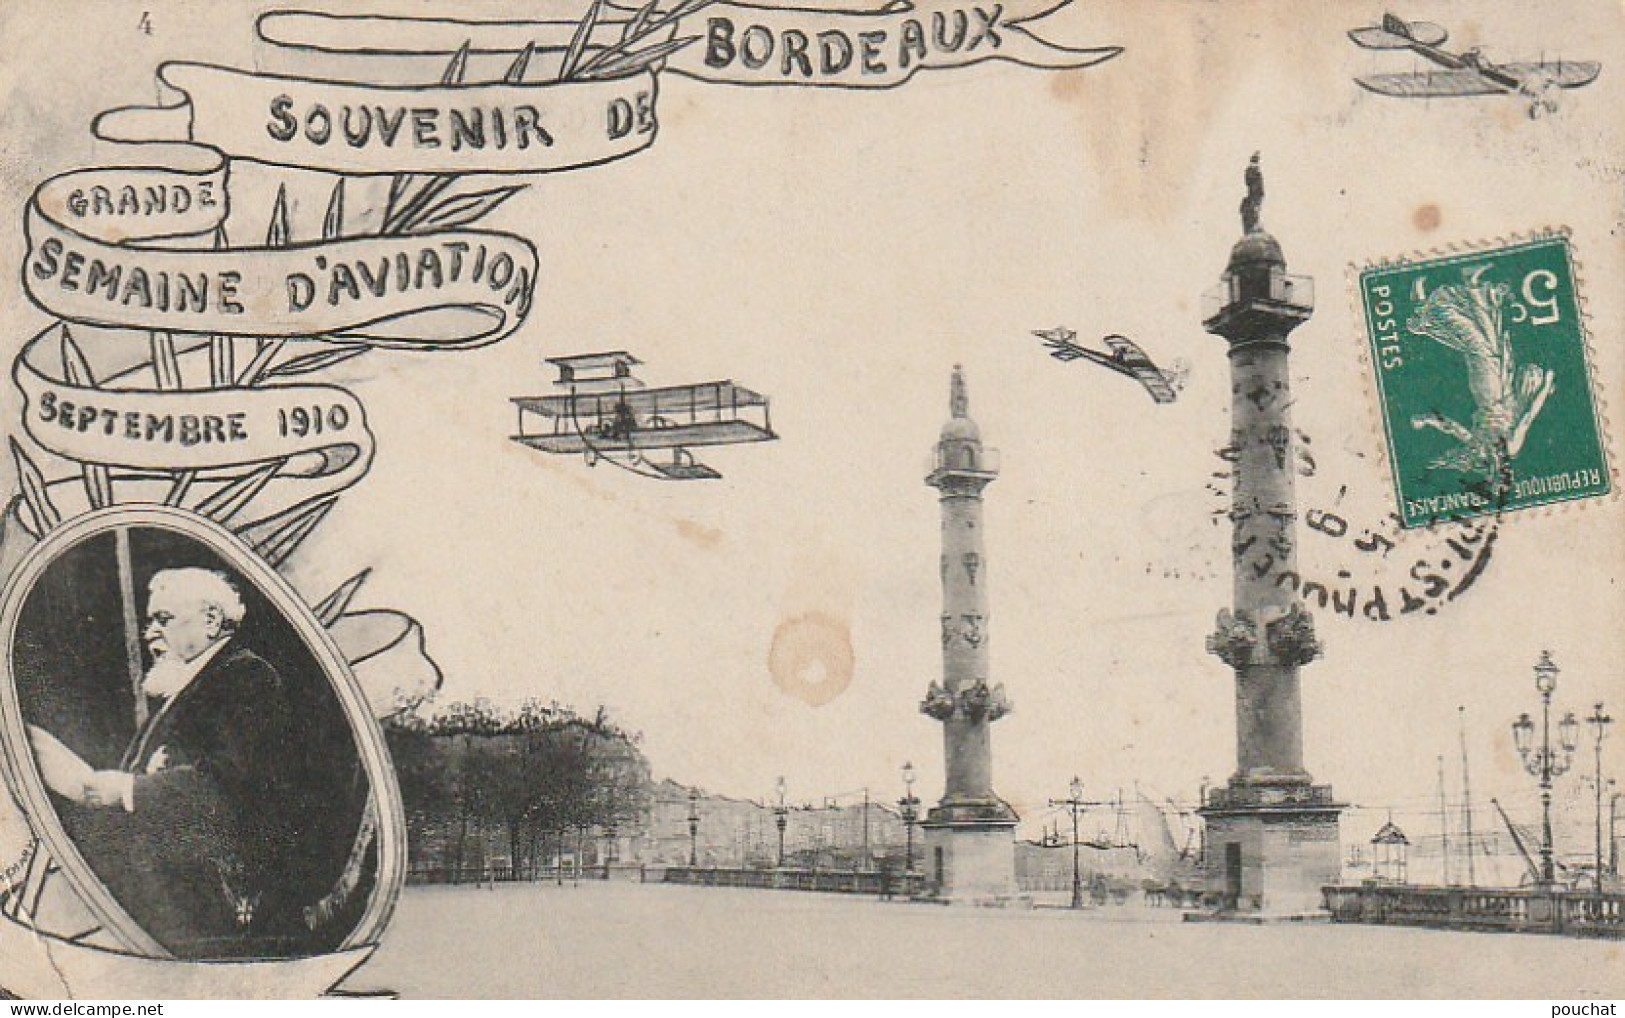 NE 8-(33) BORDEAUX - SOUVENIR DE LA GRANDE SEMAINE D' AVIATION SEPTEMBRE 1910 - MEDAILLON FALLIERES- 2 SCANS - Bordeaux